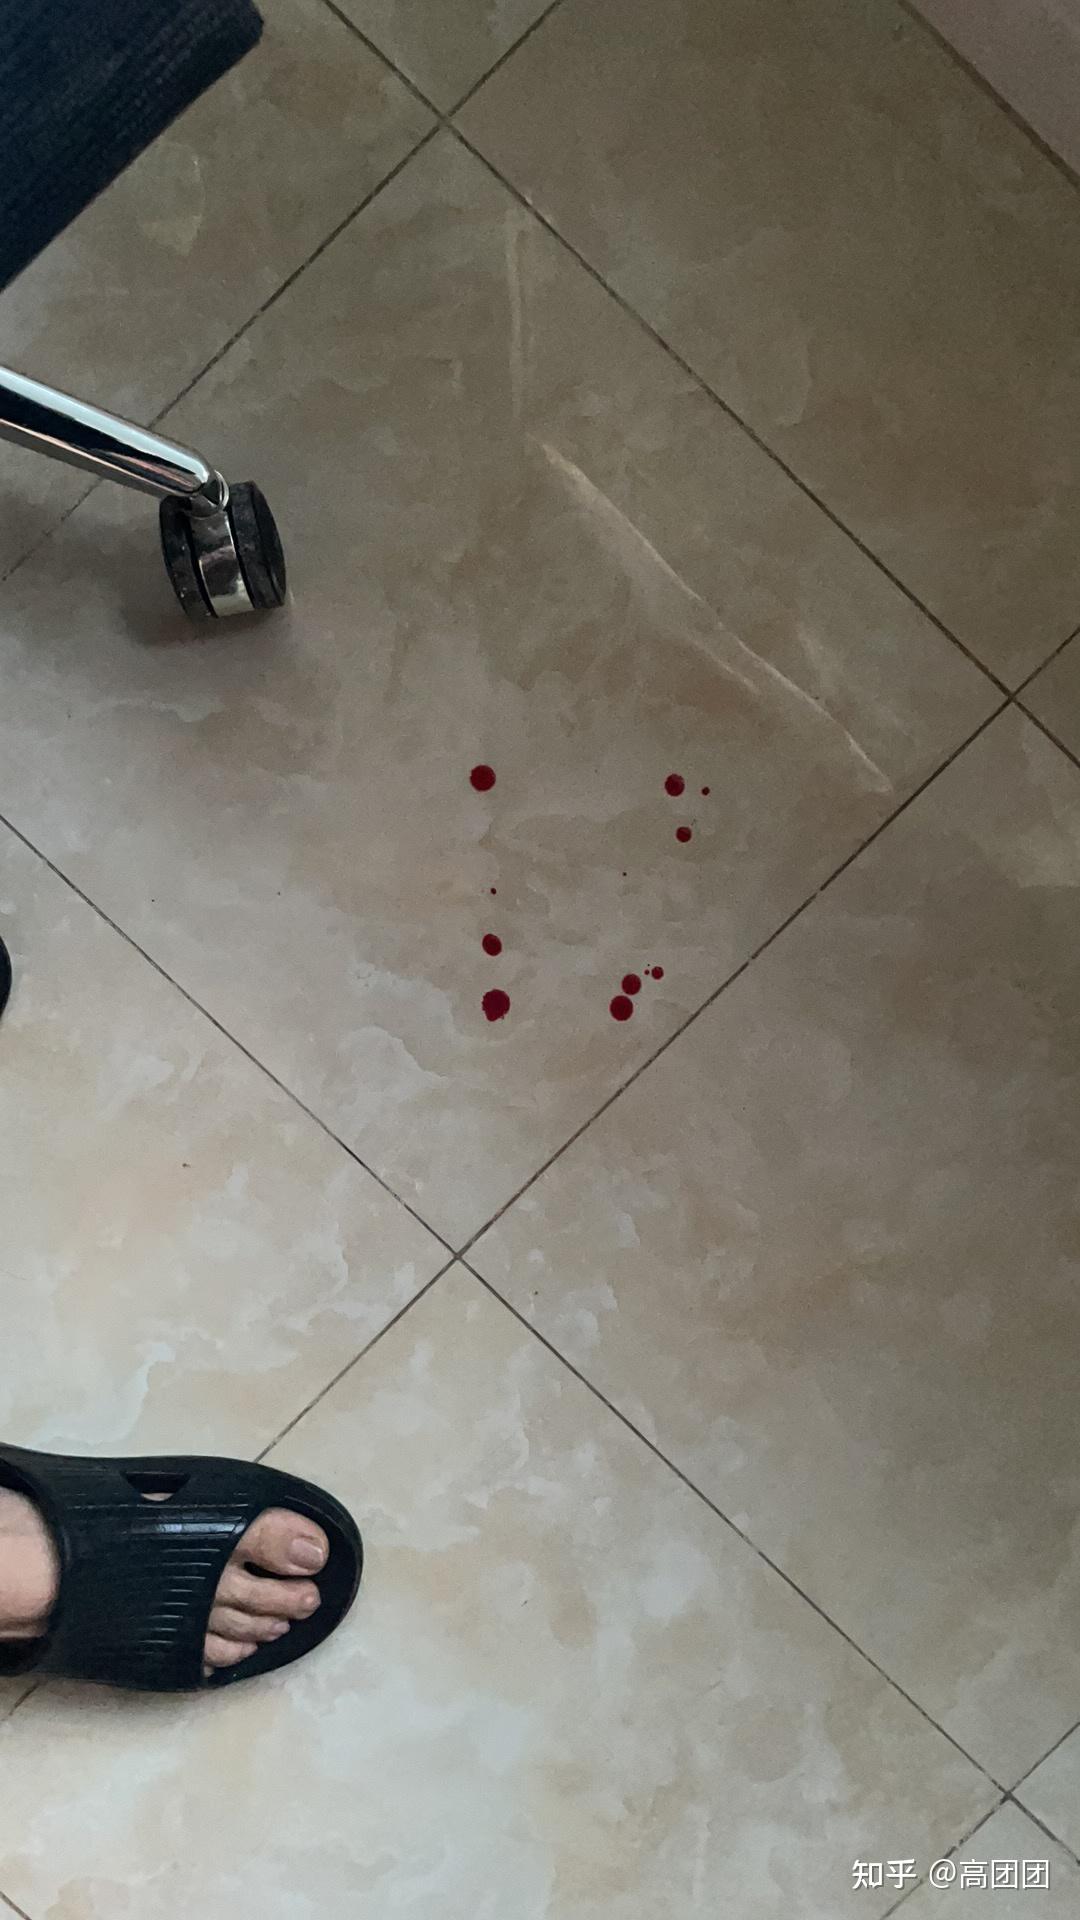 血滴在地板的真实图片图片